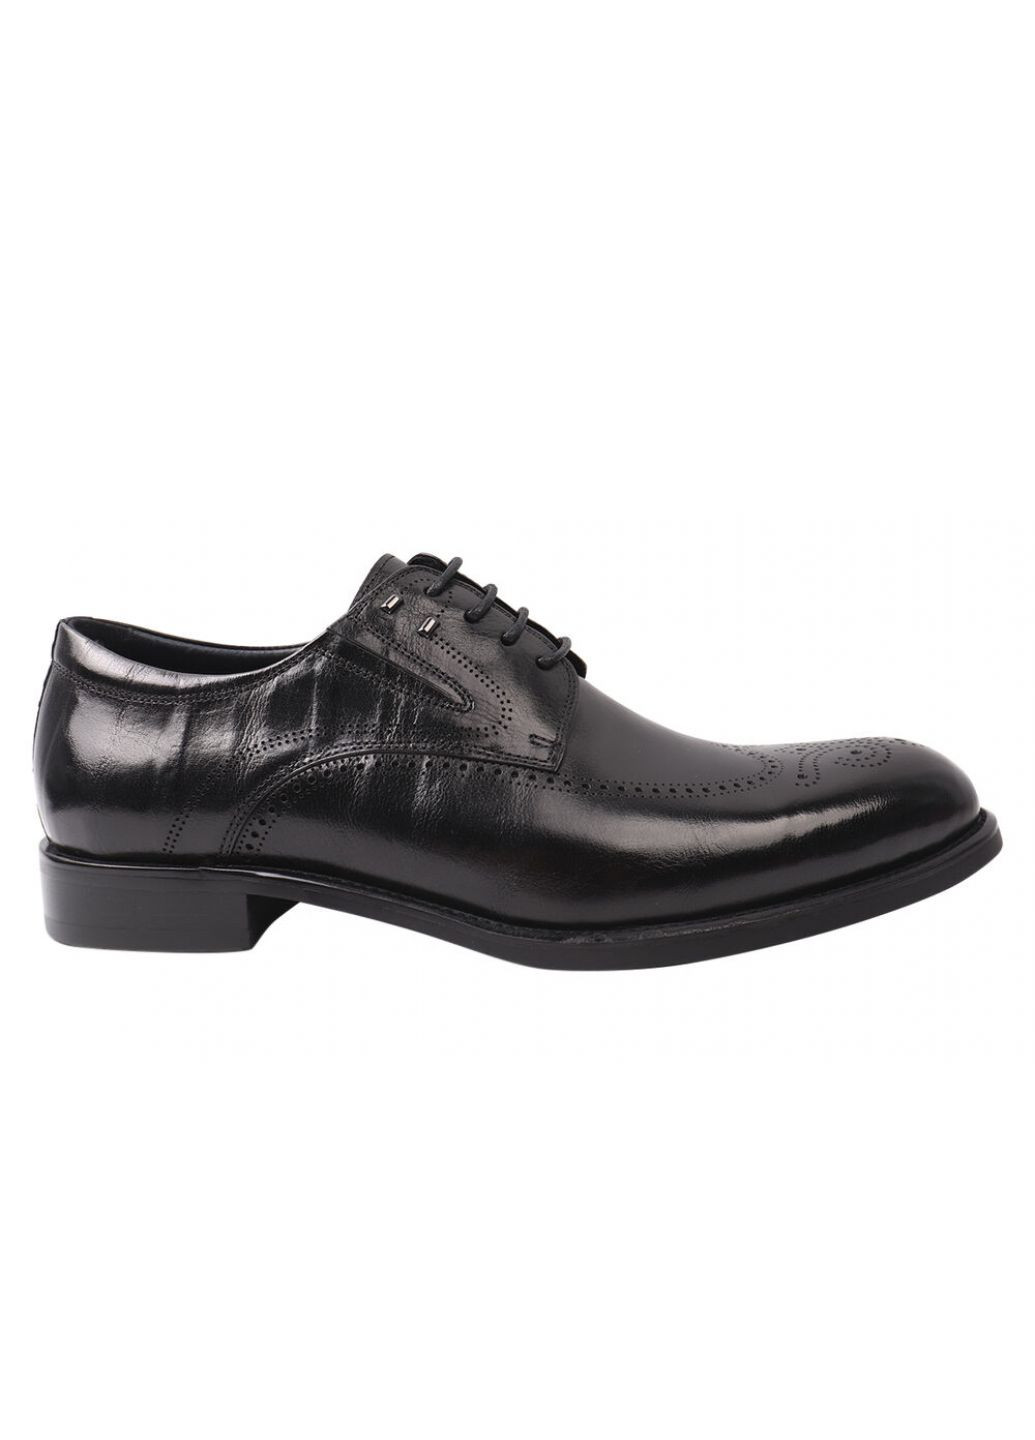 Черные туфли мужские из натуральной кожи, на низком ходу, на шнуровке, цвет черный, Brooman